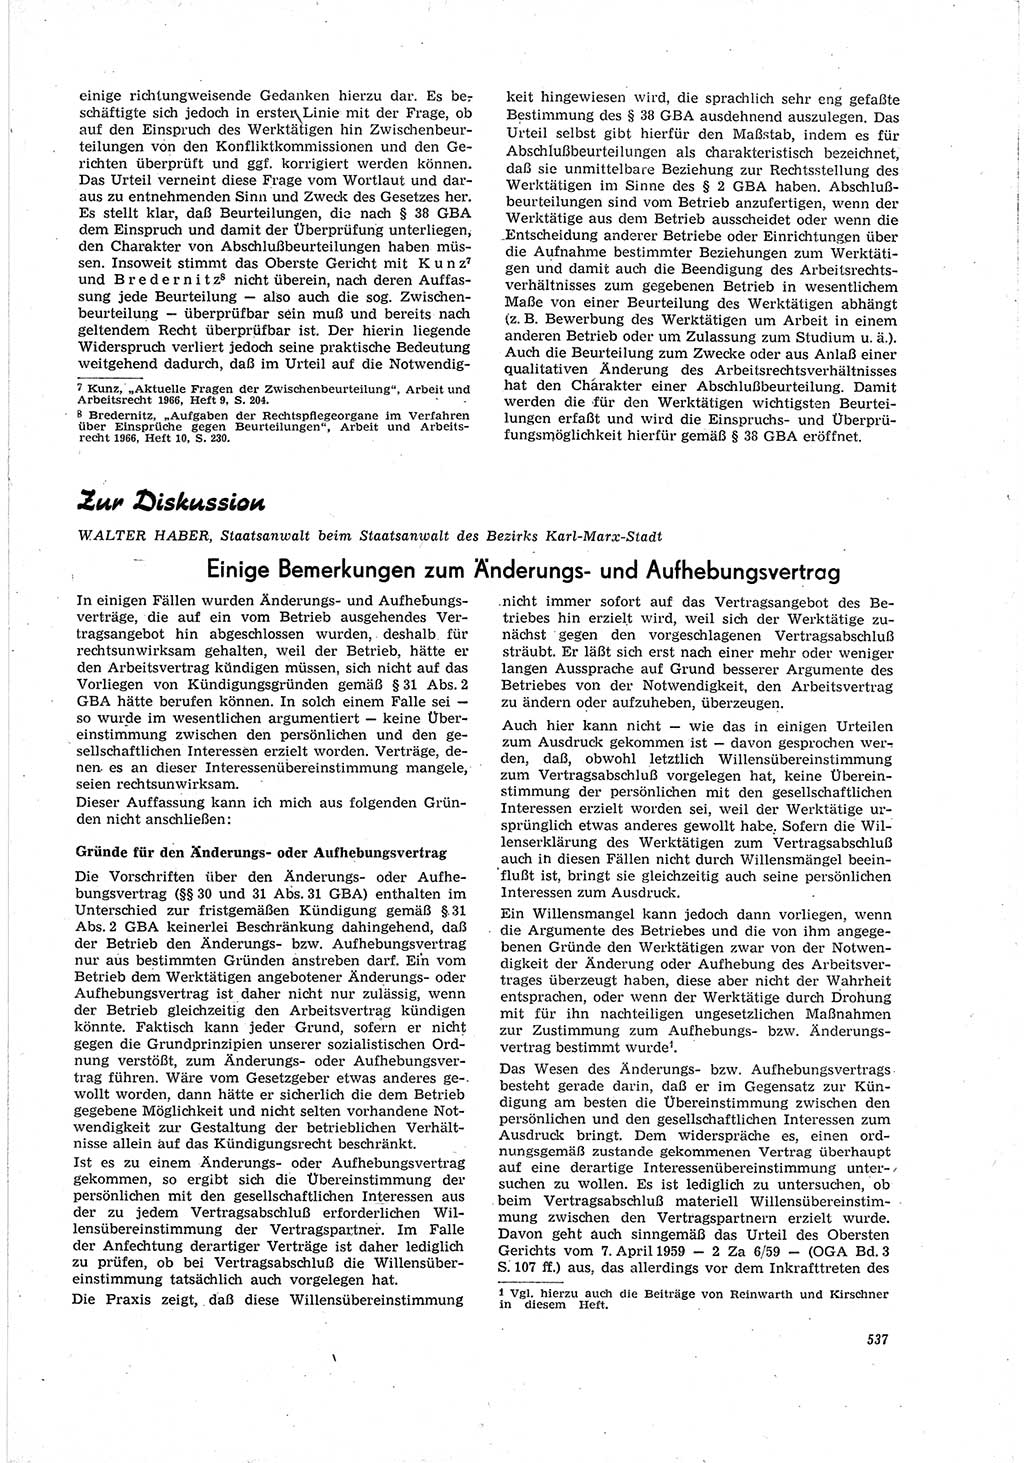 Neue Justiz (NJ), Zeitschrift für Recht und Rechtswissenschaft [Deutsche Demokratische Republik (DDR)], 20. Jahrgang 1966, Seite 537 (NJ DDR 1966, S. 537)